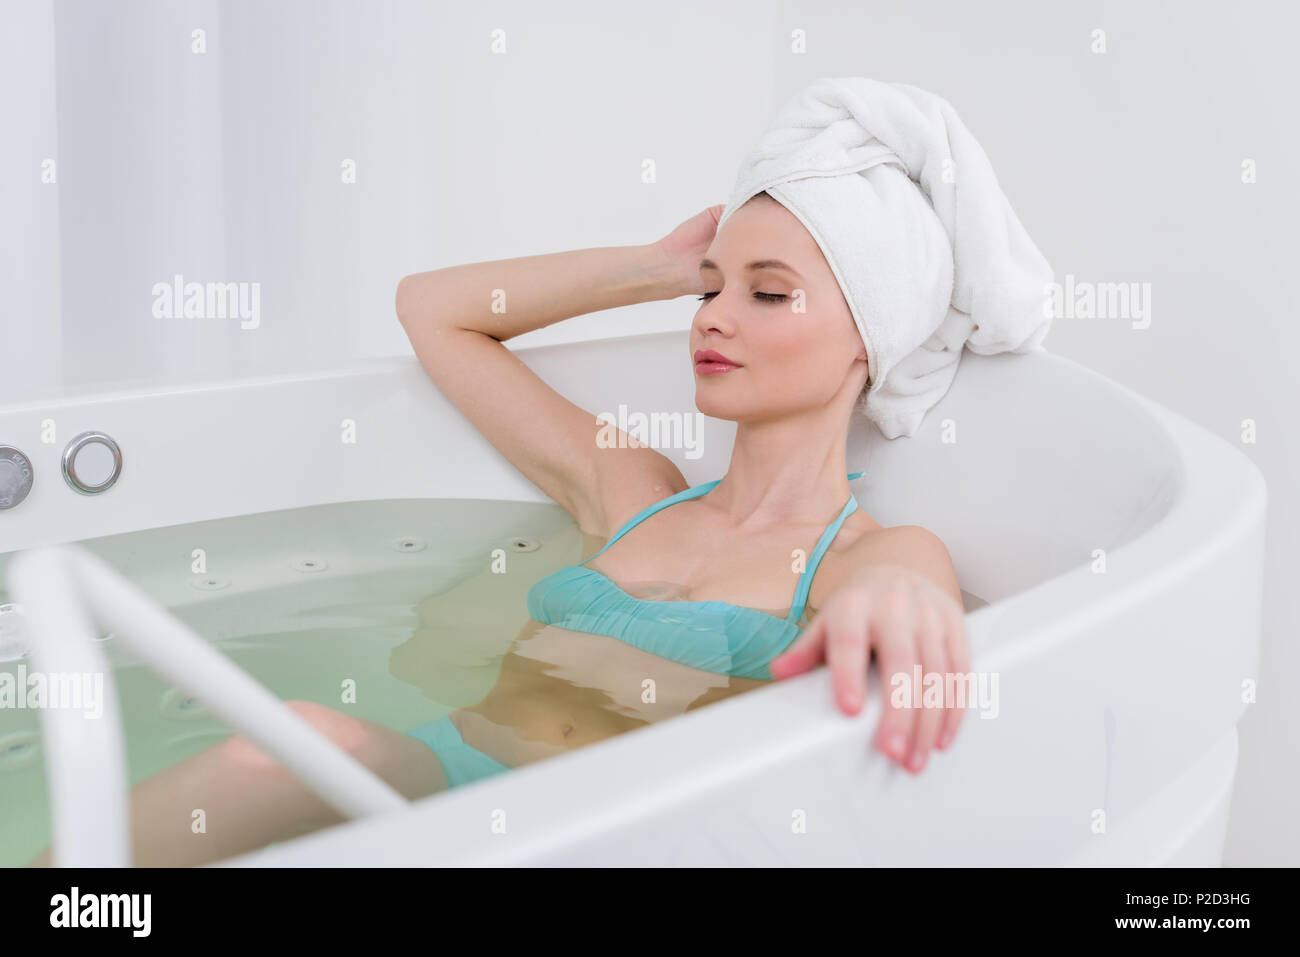 Прикрылась полотенцем. Девушка с полотенцем на голове. Девушка в полотенце в ванной. Девушка с полотенцем на голове в ванной. Женщина в купальнике в ванне.